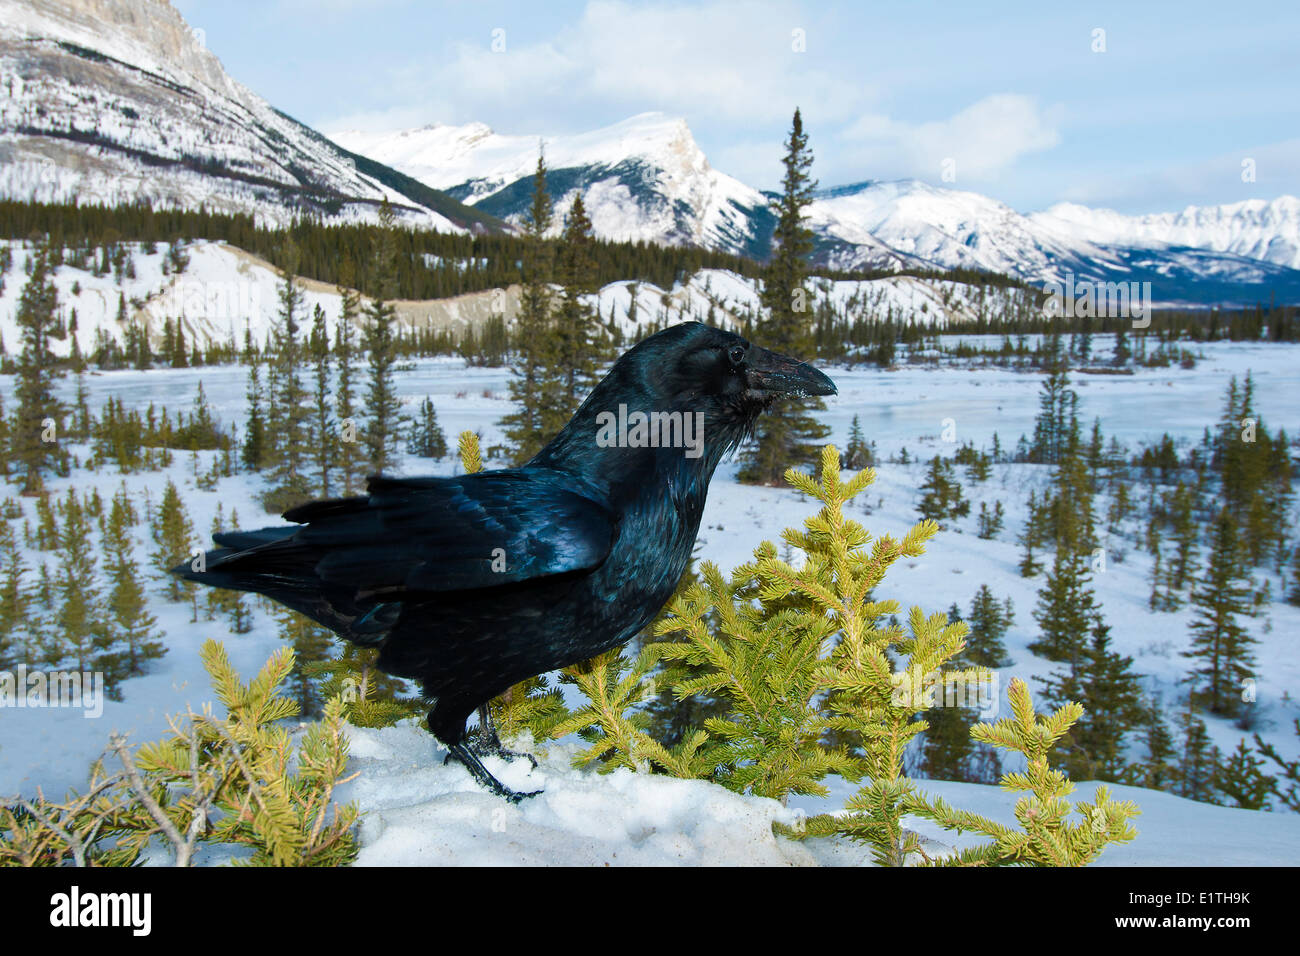 Grand corbeau (Corvus corax) Rivière Saskatchewan Sud, en hiver, le parc national Banff, l'ouest de l'Alberta, Canada Banque D'Images